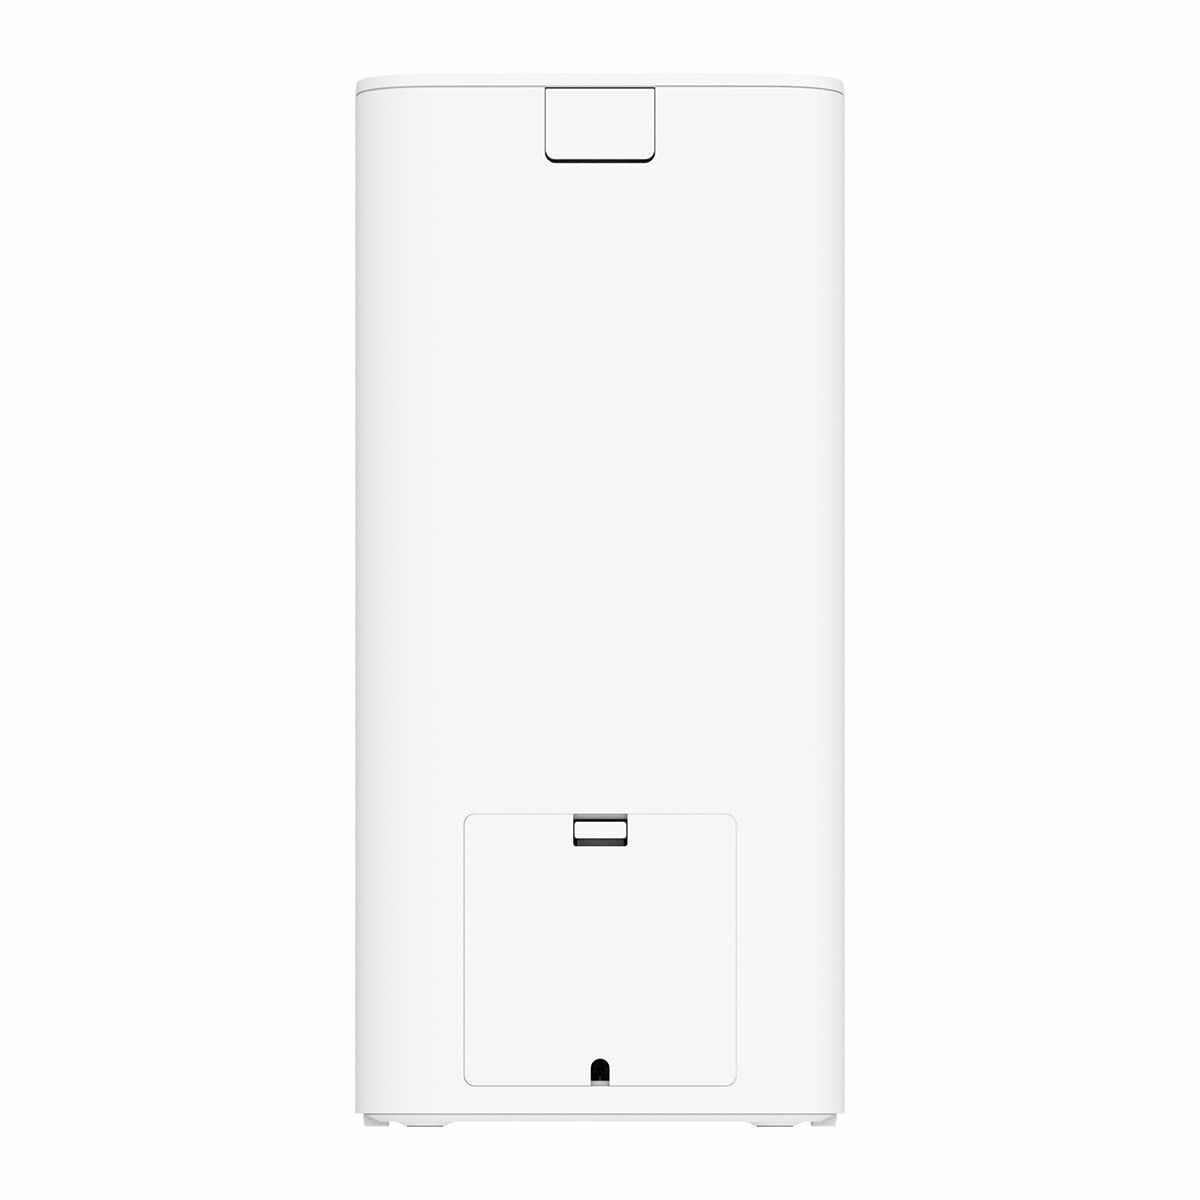 Automatic feeder Xiaomi XWPF01MG-EU 1,8 kg White